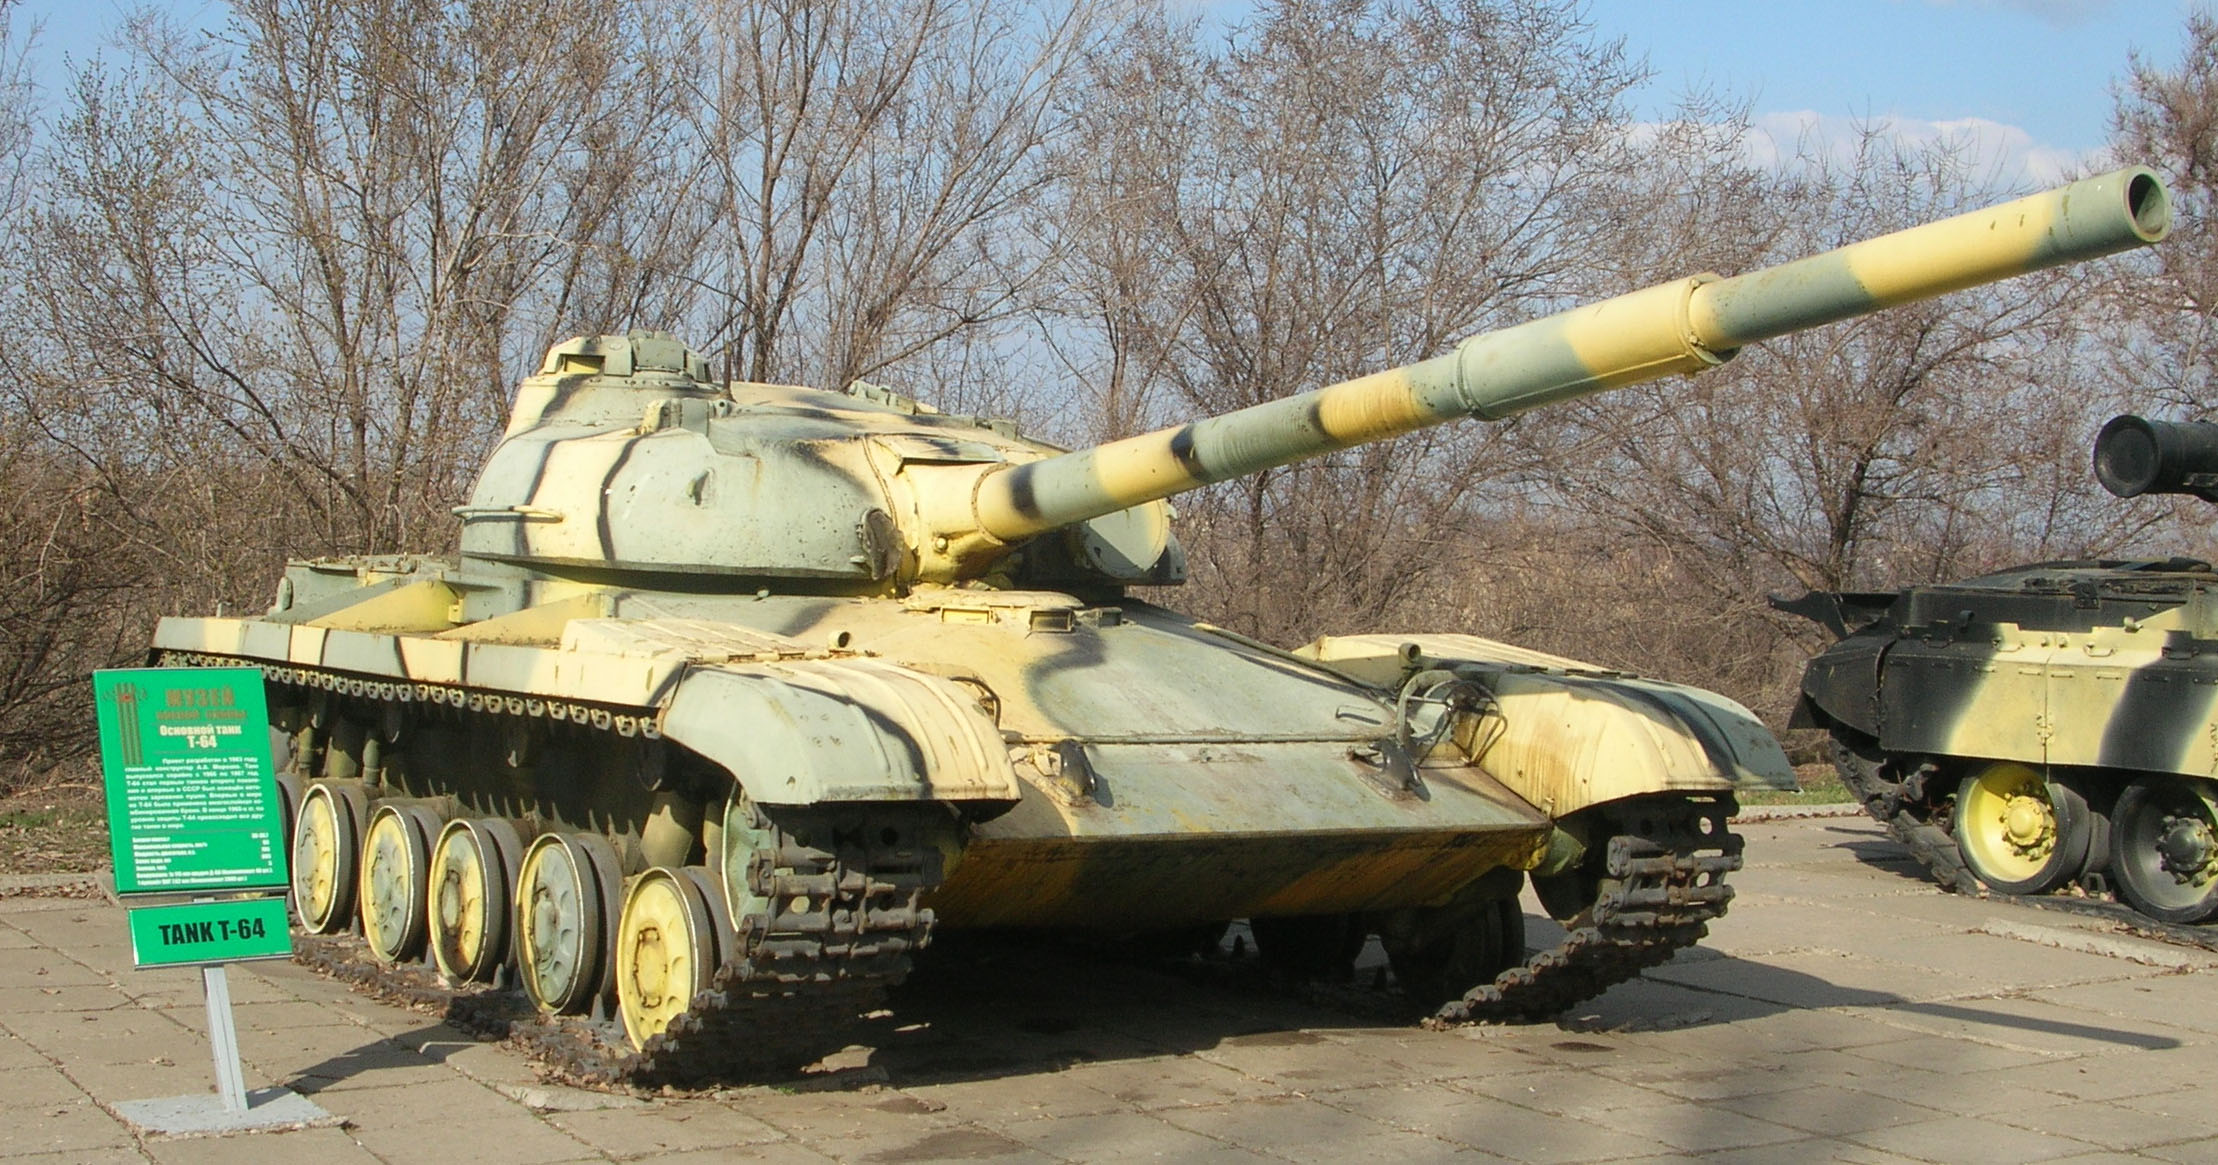 T-64 - Vikipedi